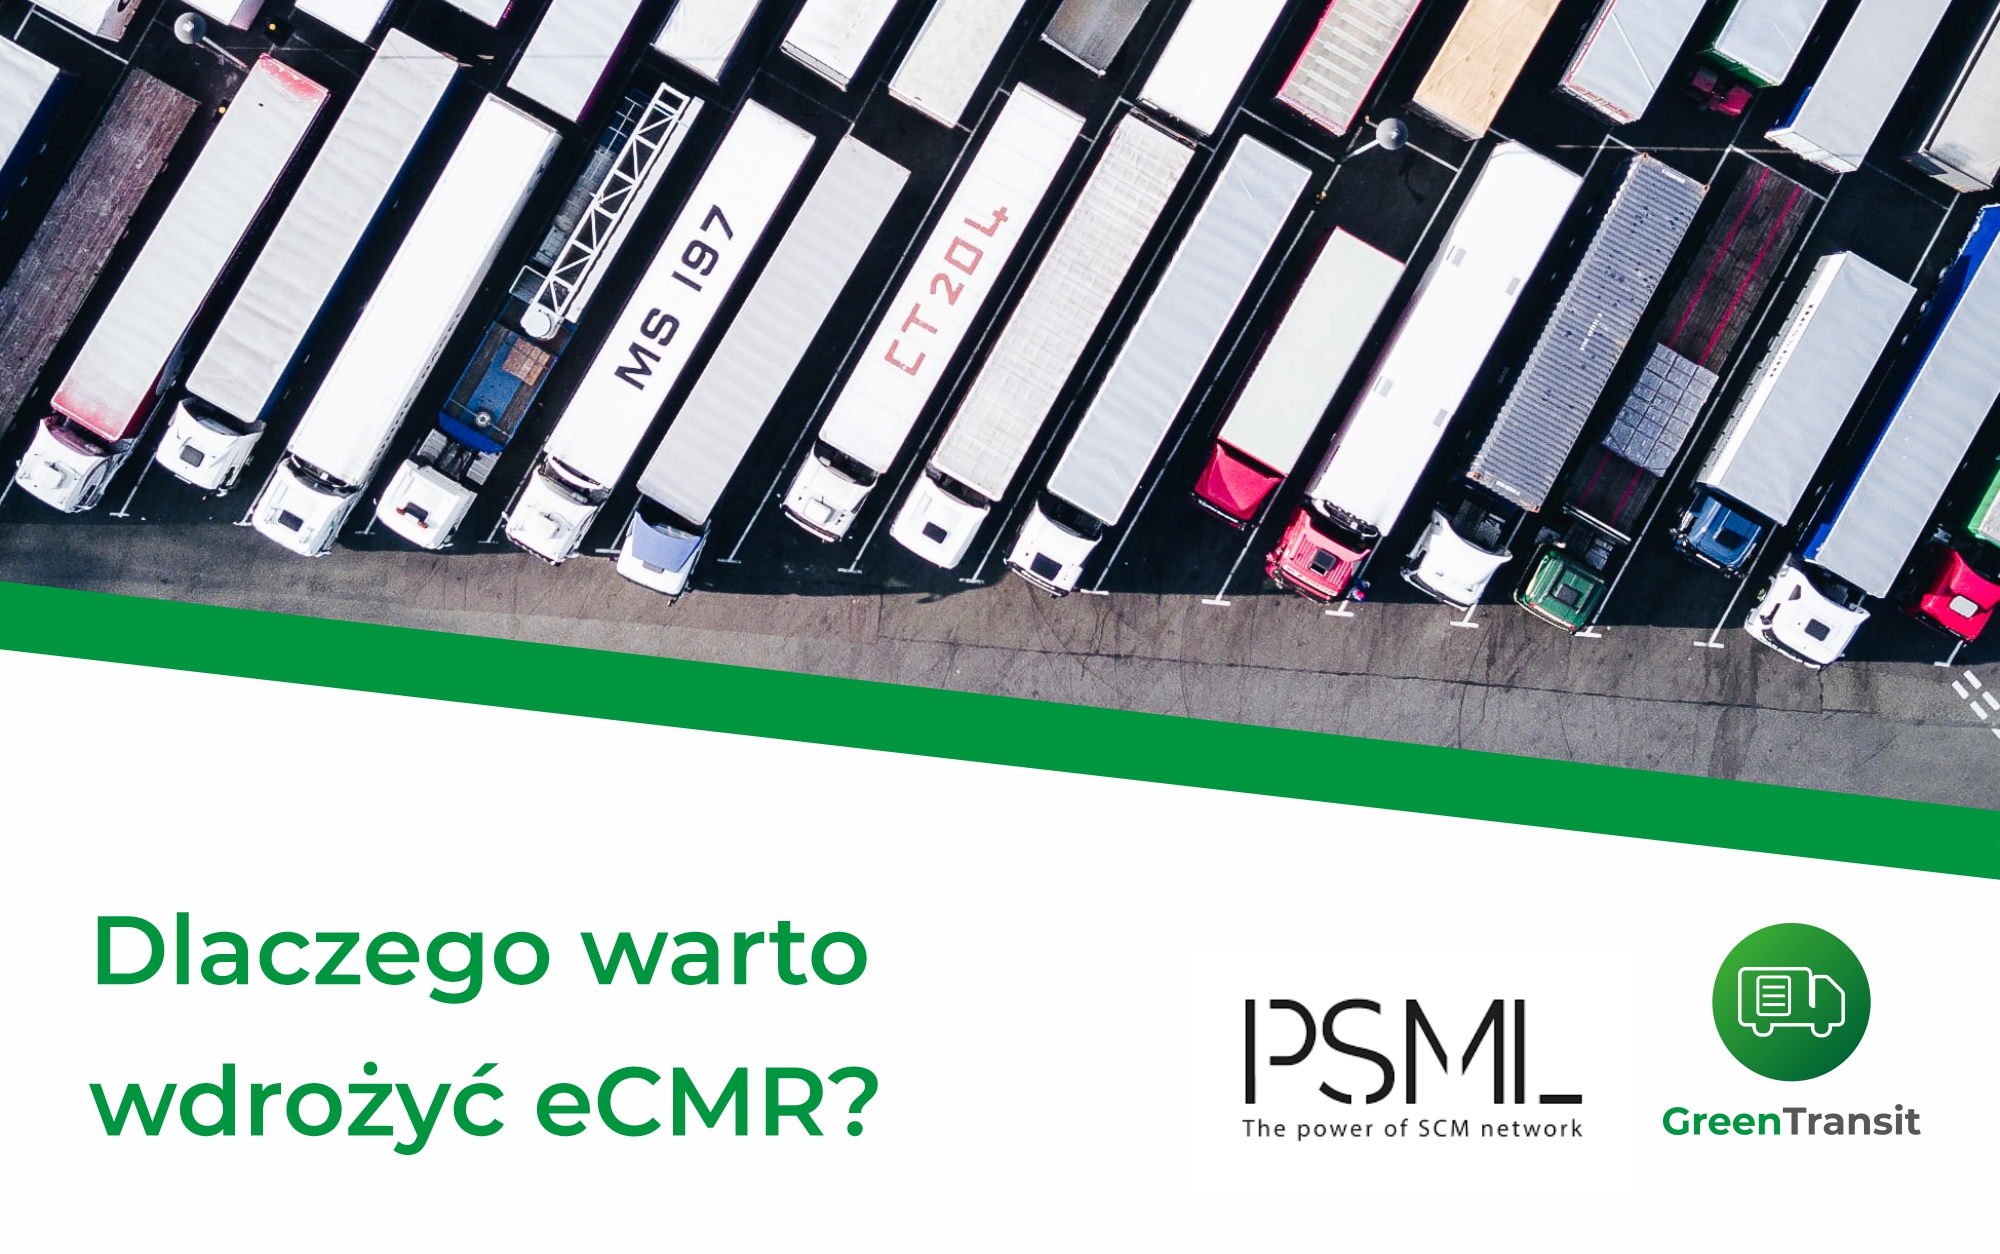 Cyfryzacja dokumentów przewozowych – Dlaczego warto wdrożyć eCMR?